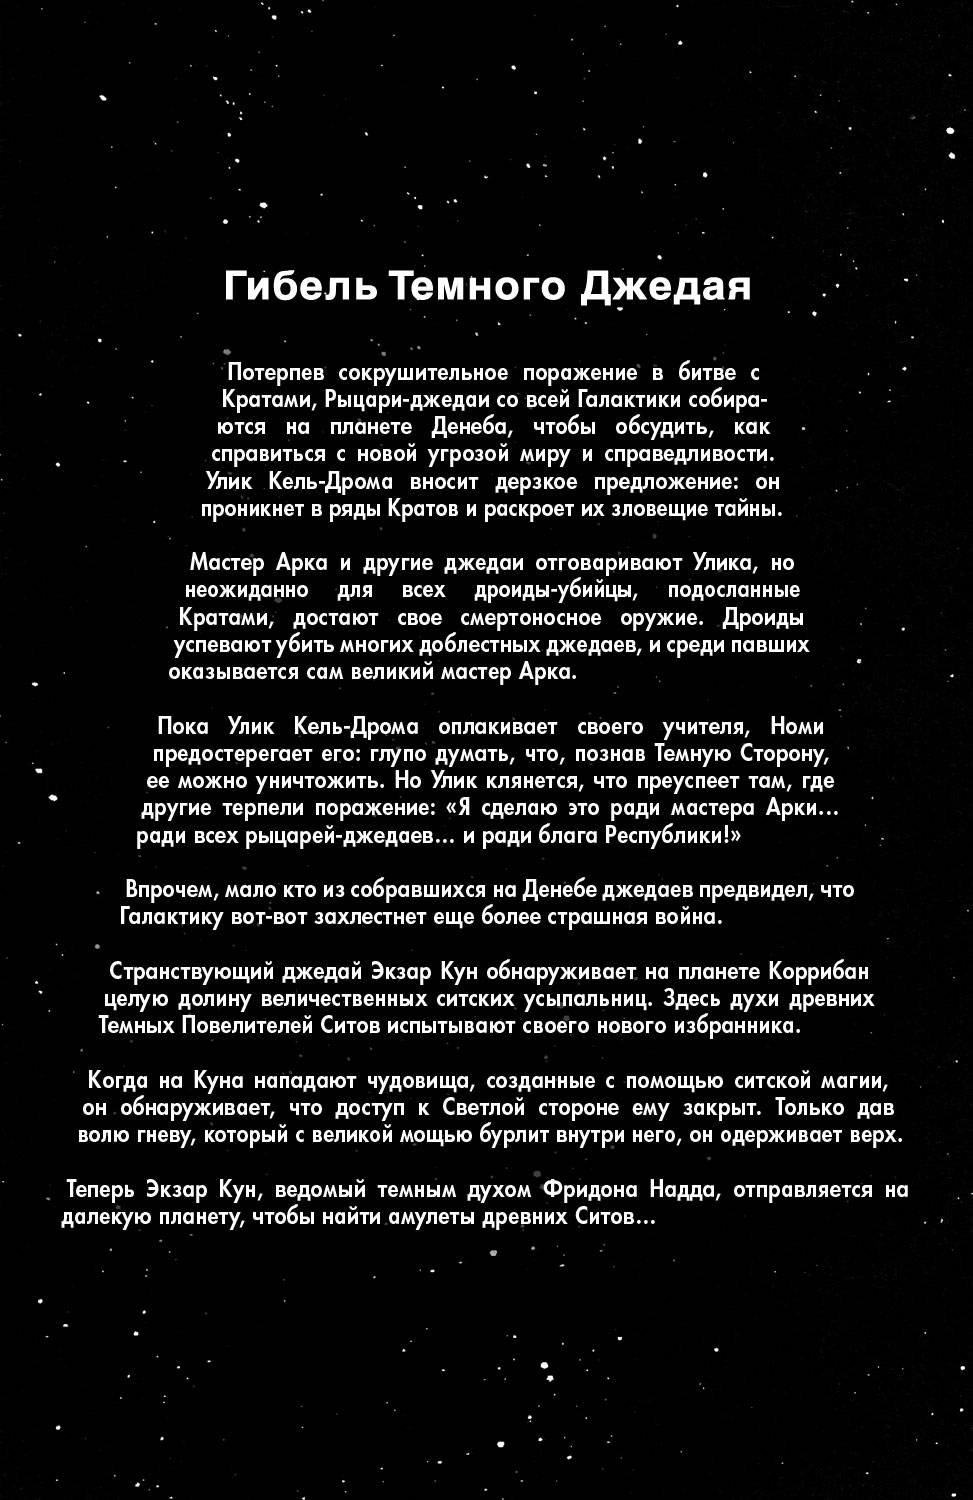 Звездные Войны: Сказания о Джедаях: Темные Повелители Ситов №4 онлайн